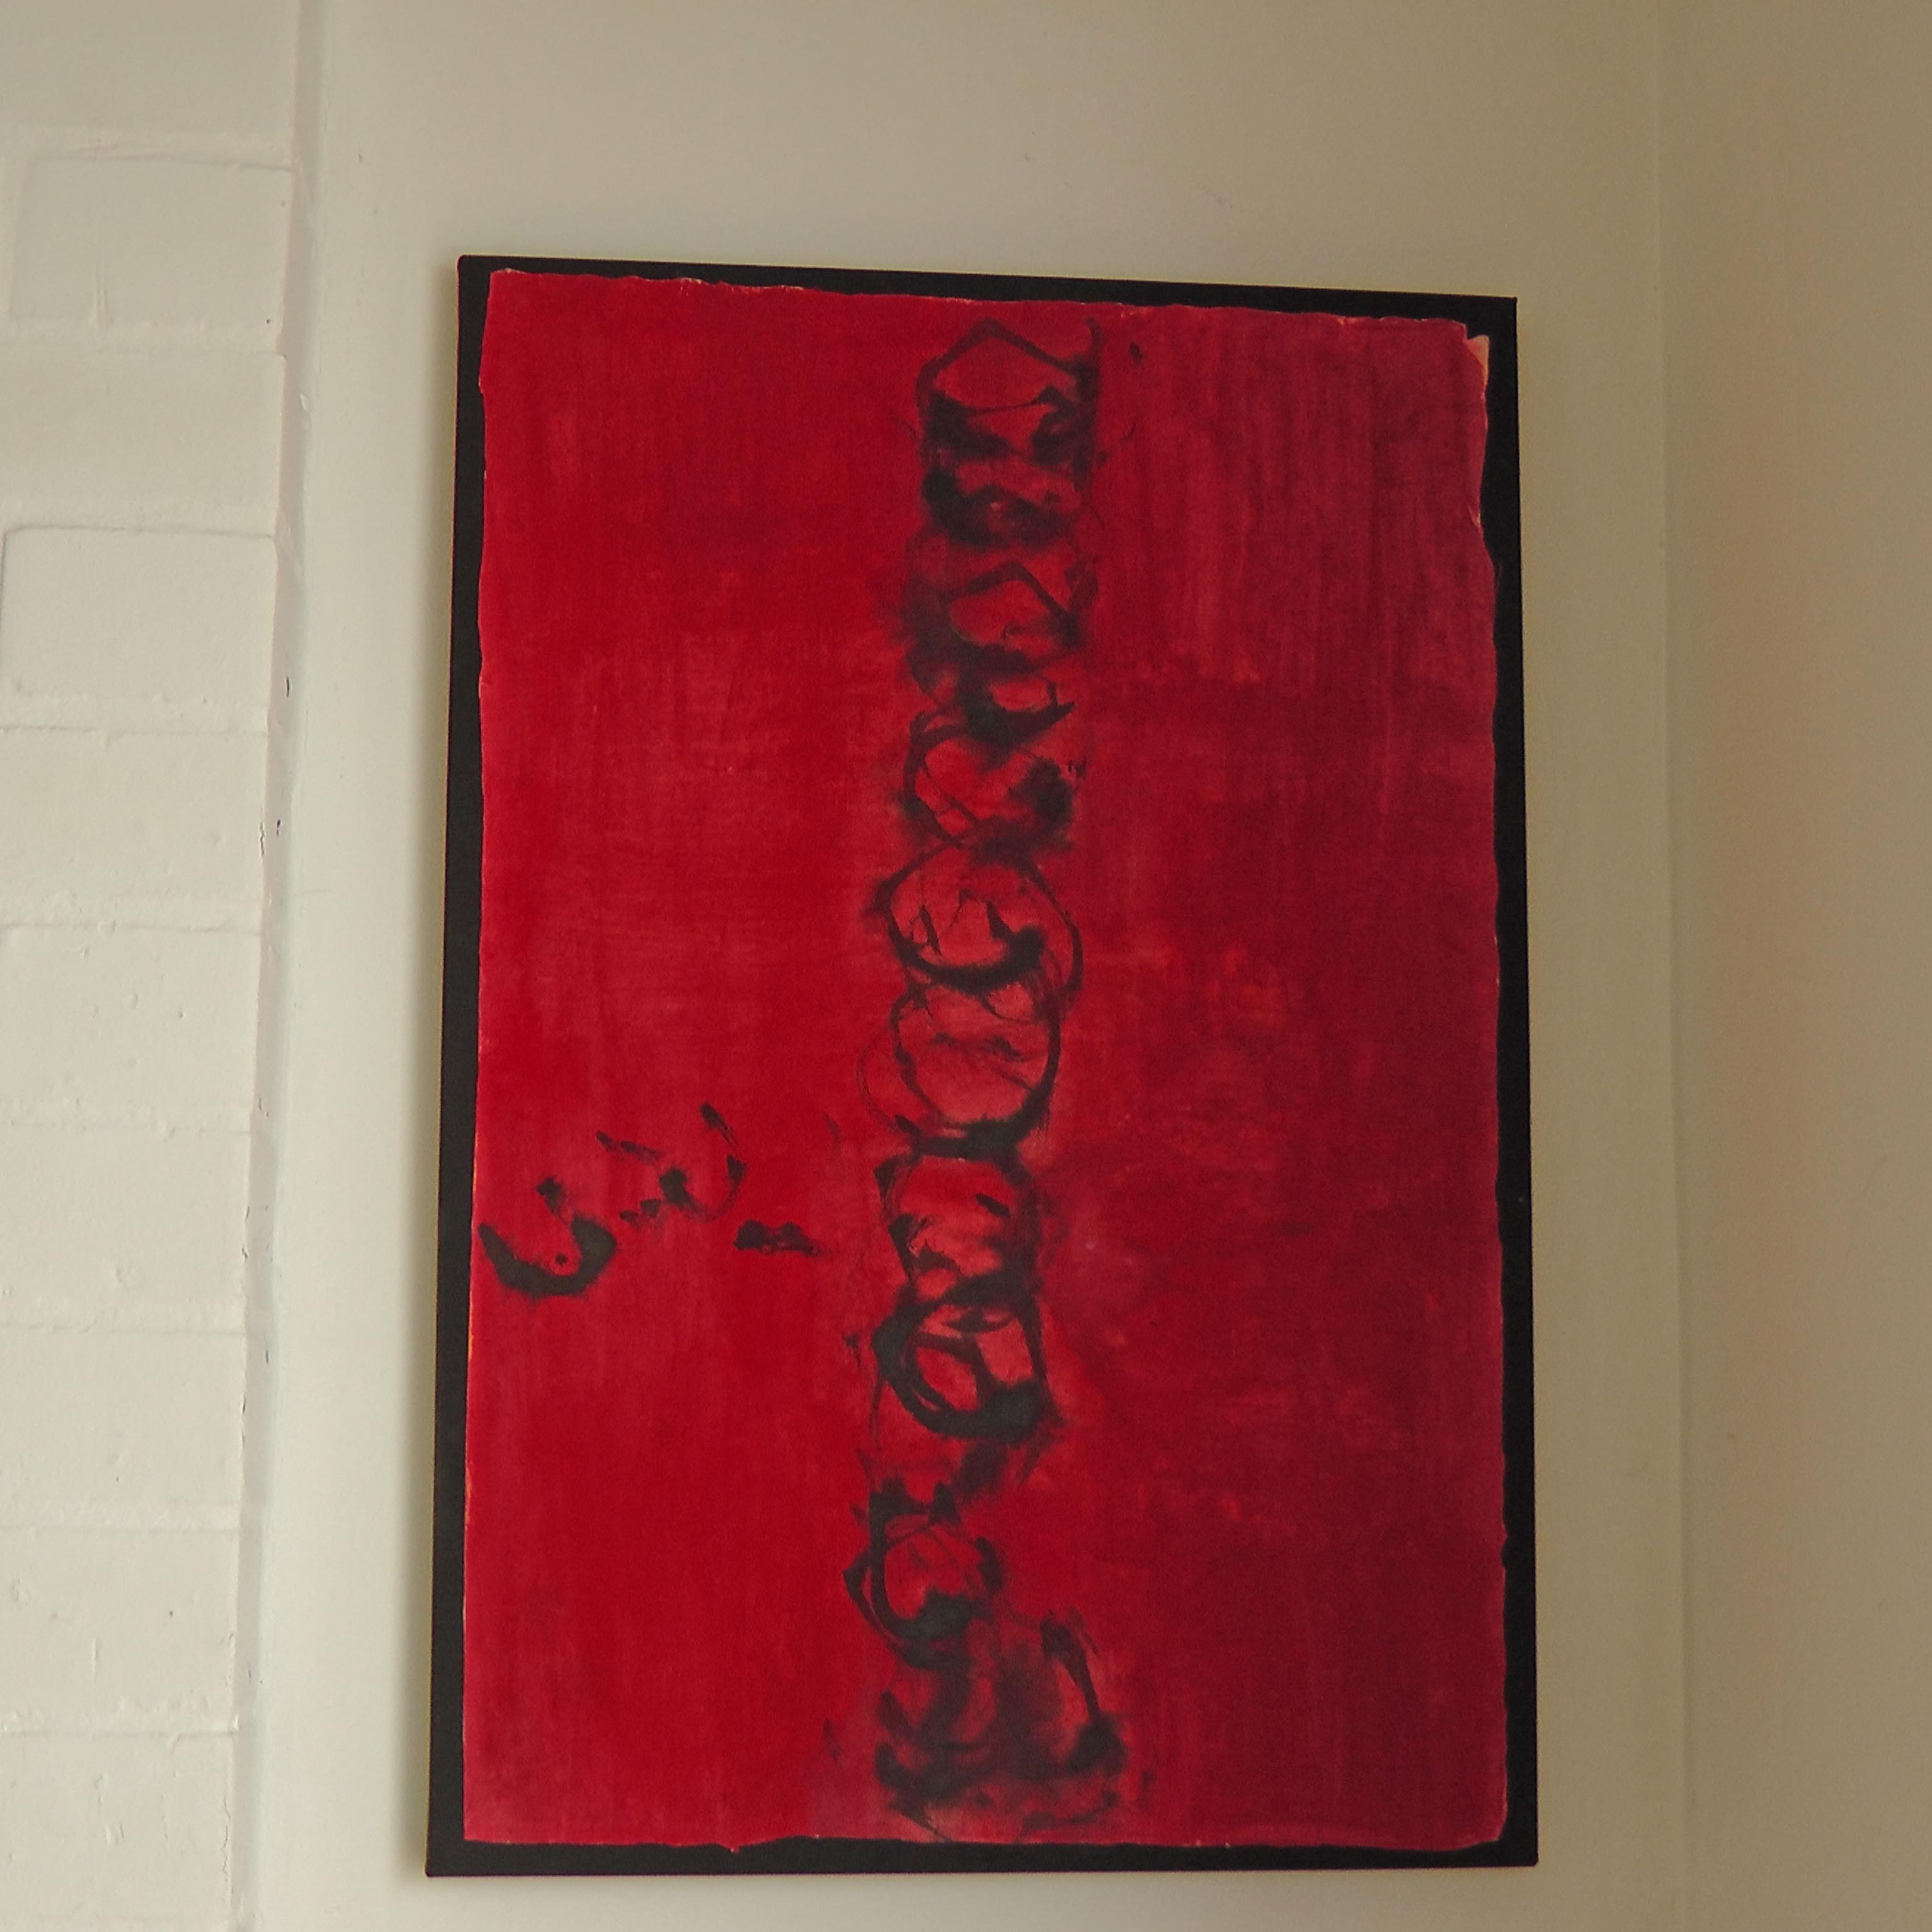 Rachel Silski, No man's lans, techniques mixtes sur papier Do, 36 x 59 cm, 2013